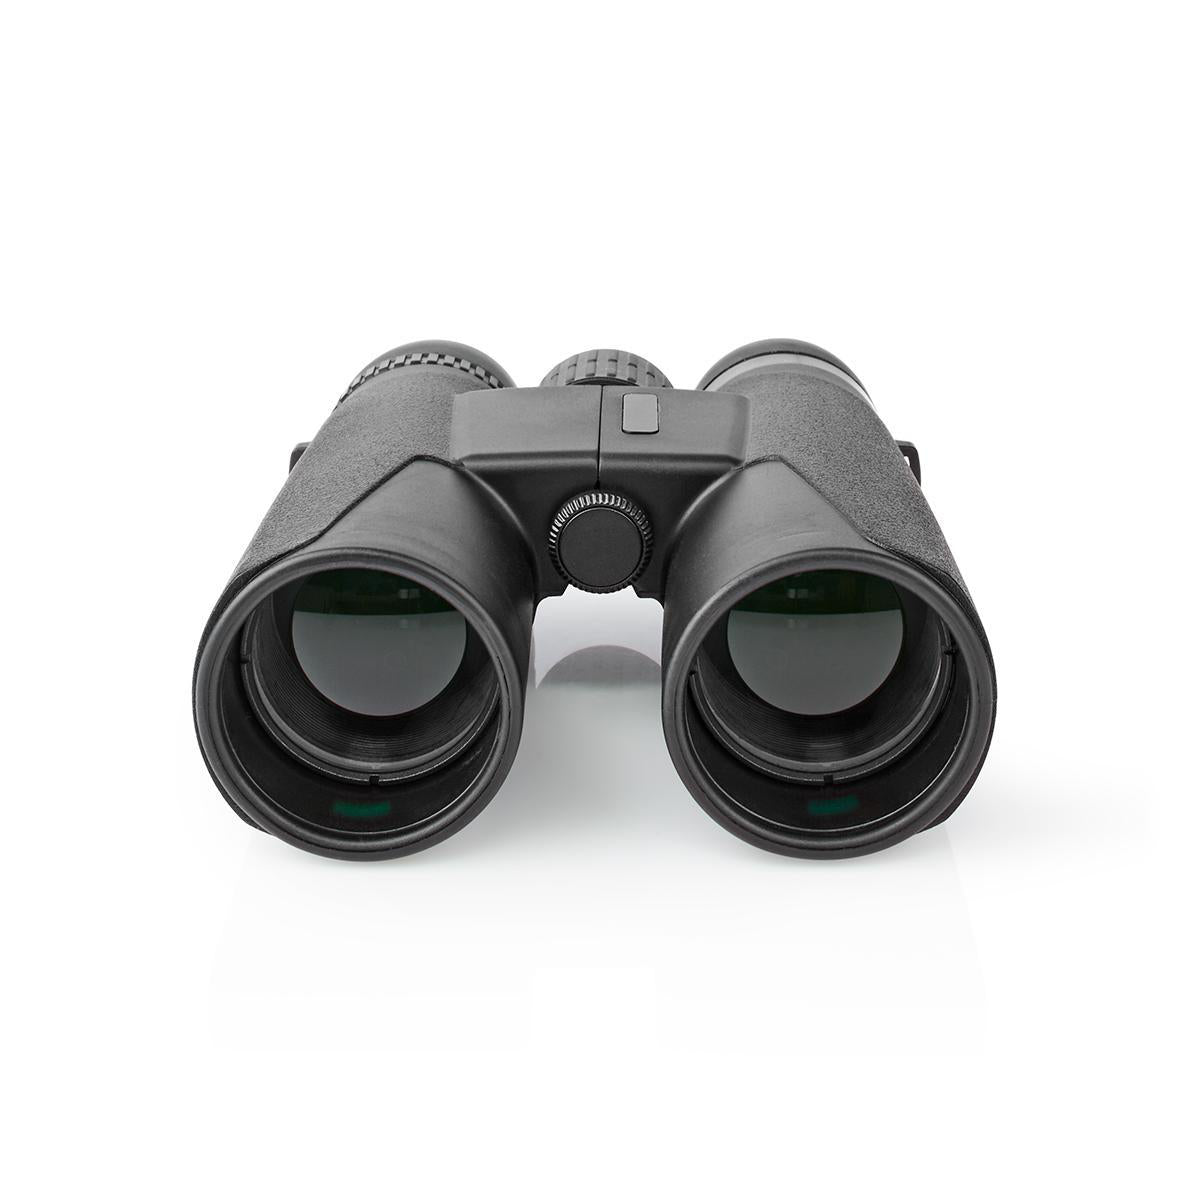 Binokular | Vergrößerung: 10 x | Durchmesser der Objektivlinse: 42 mm | Sichtfeld: 96 m | Tragetasche enthalten | Schwarz